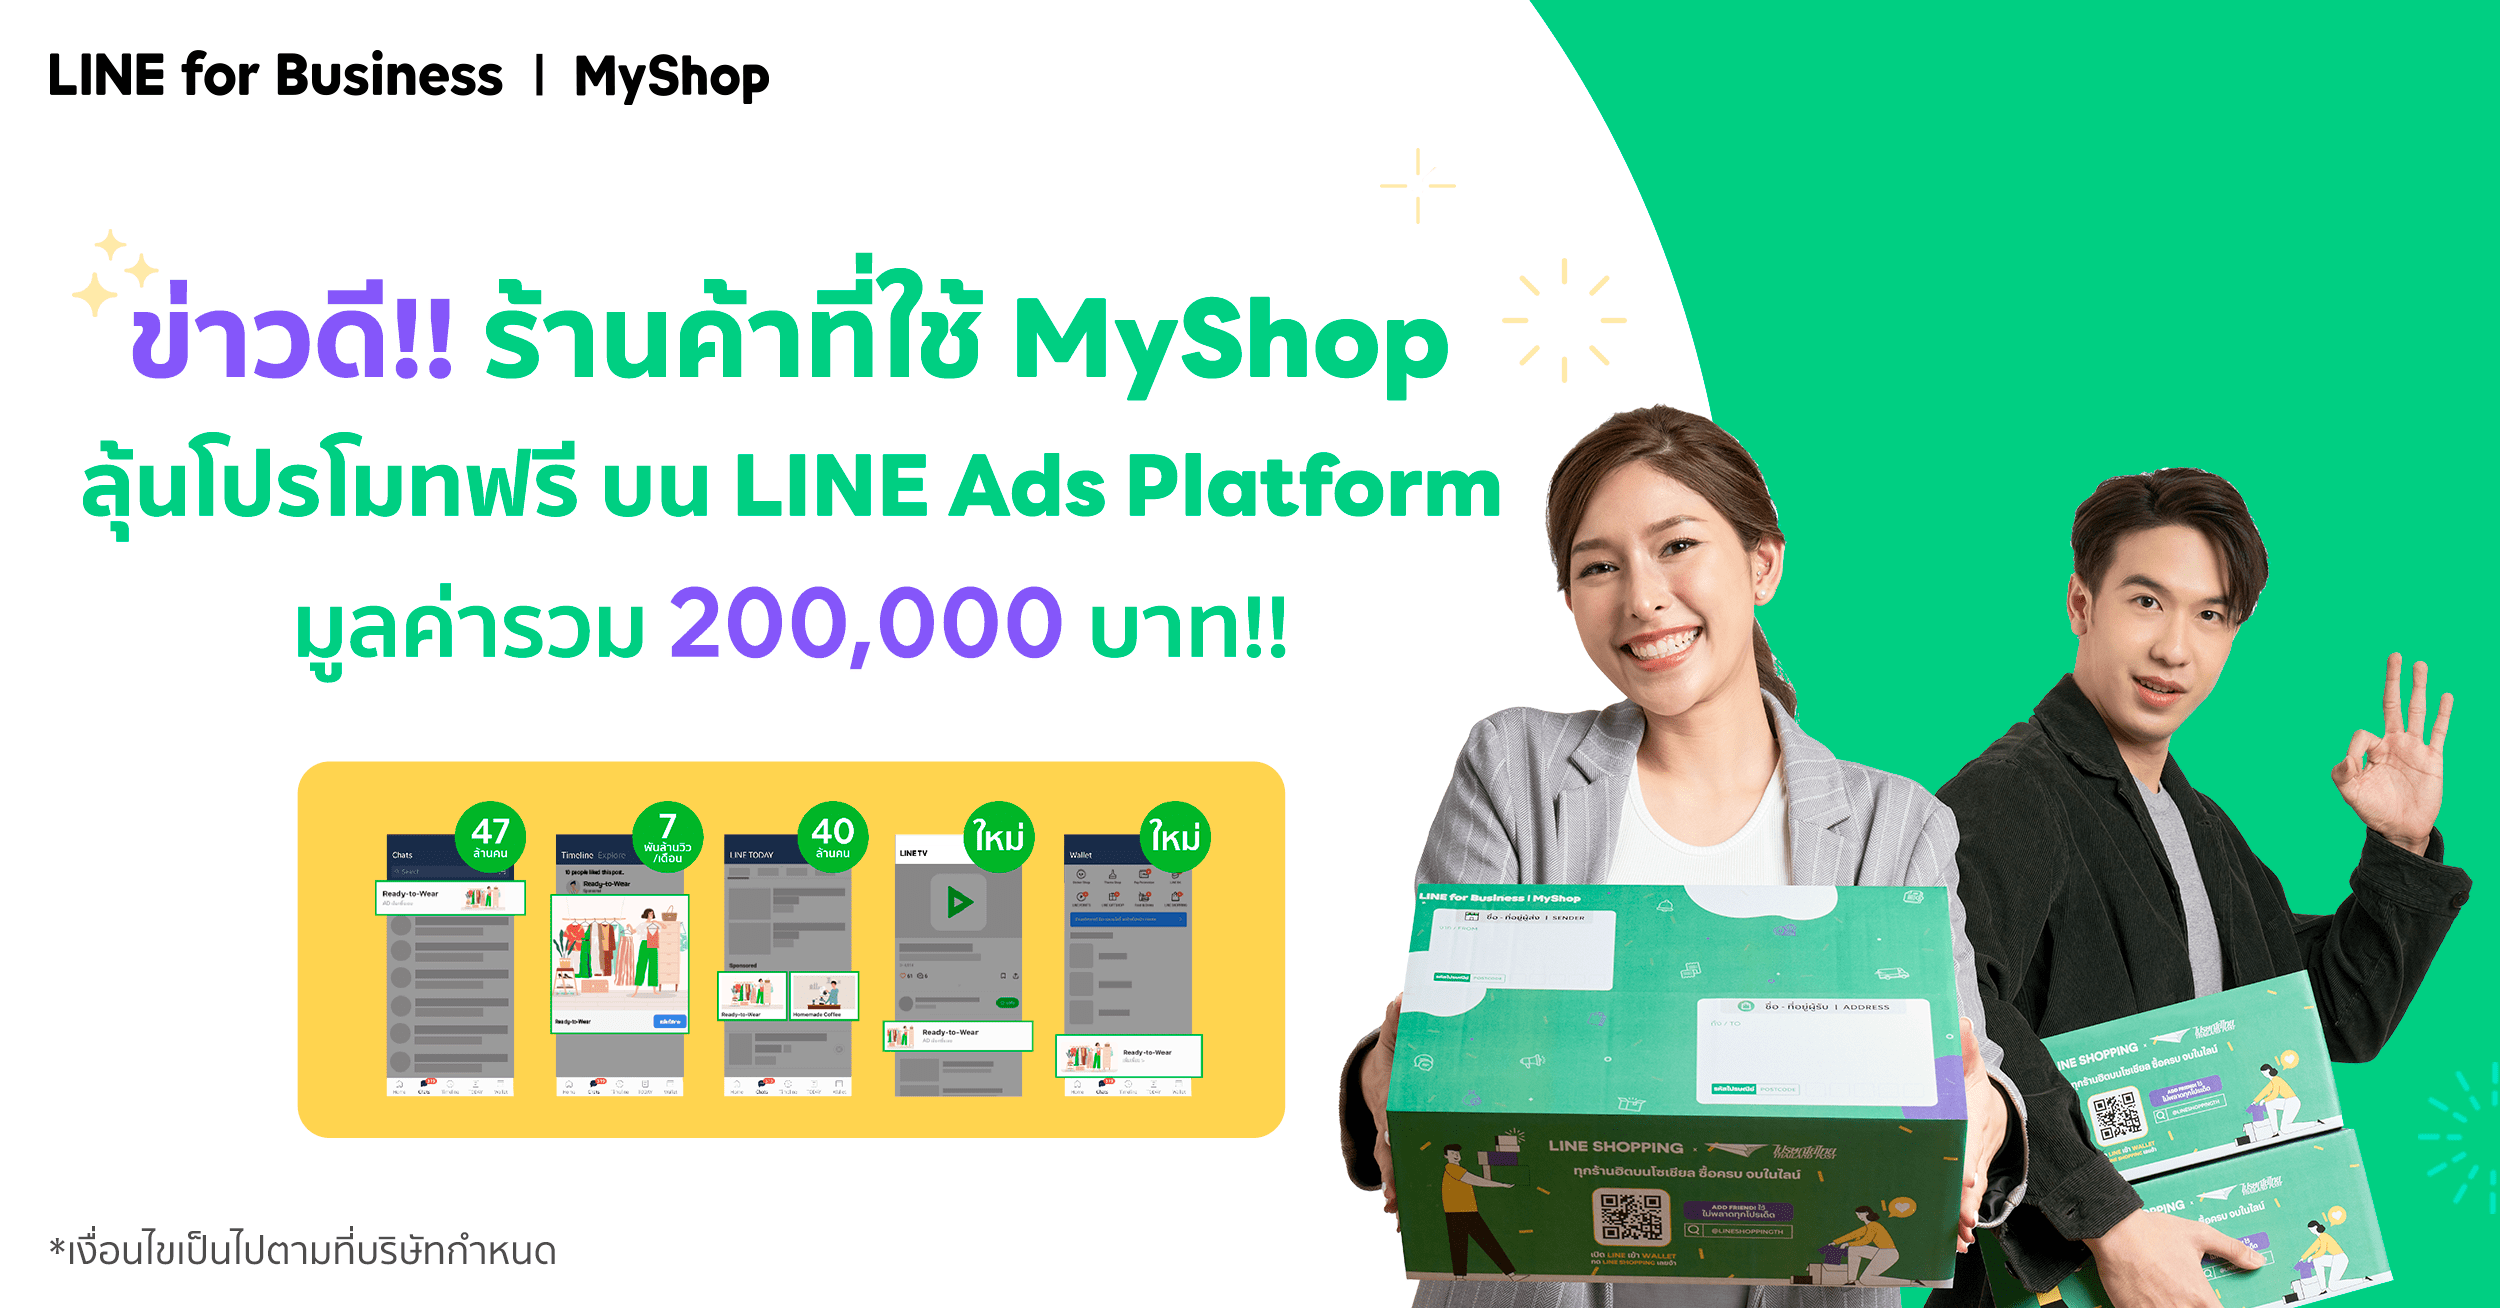 ร้านค้า MyShop ลุ้นโปรโมทฟรีบน LINE Ads Platform มูลค่ารวม 200,000 บาท